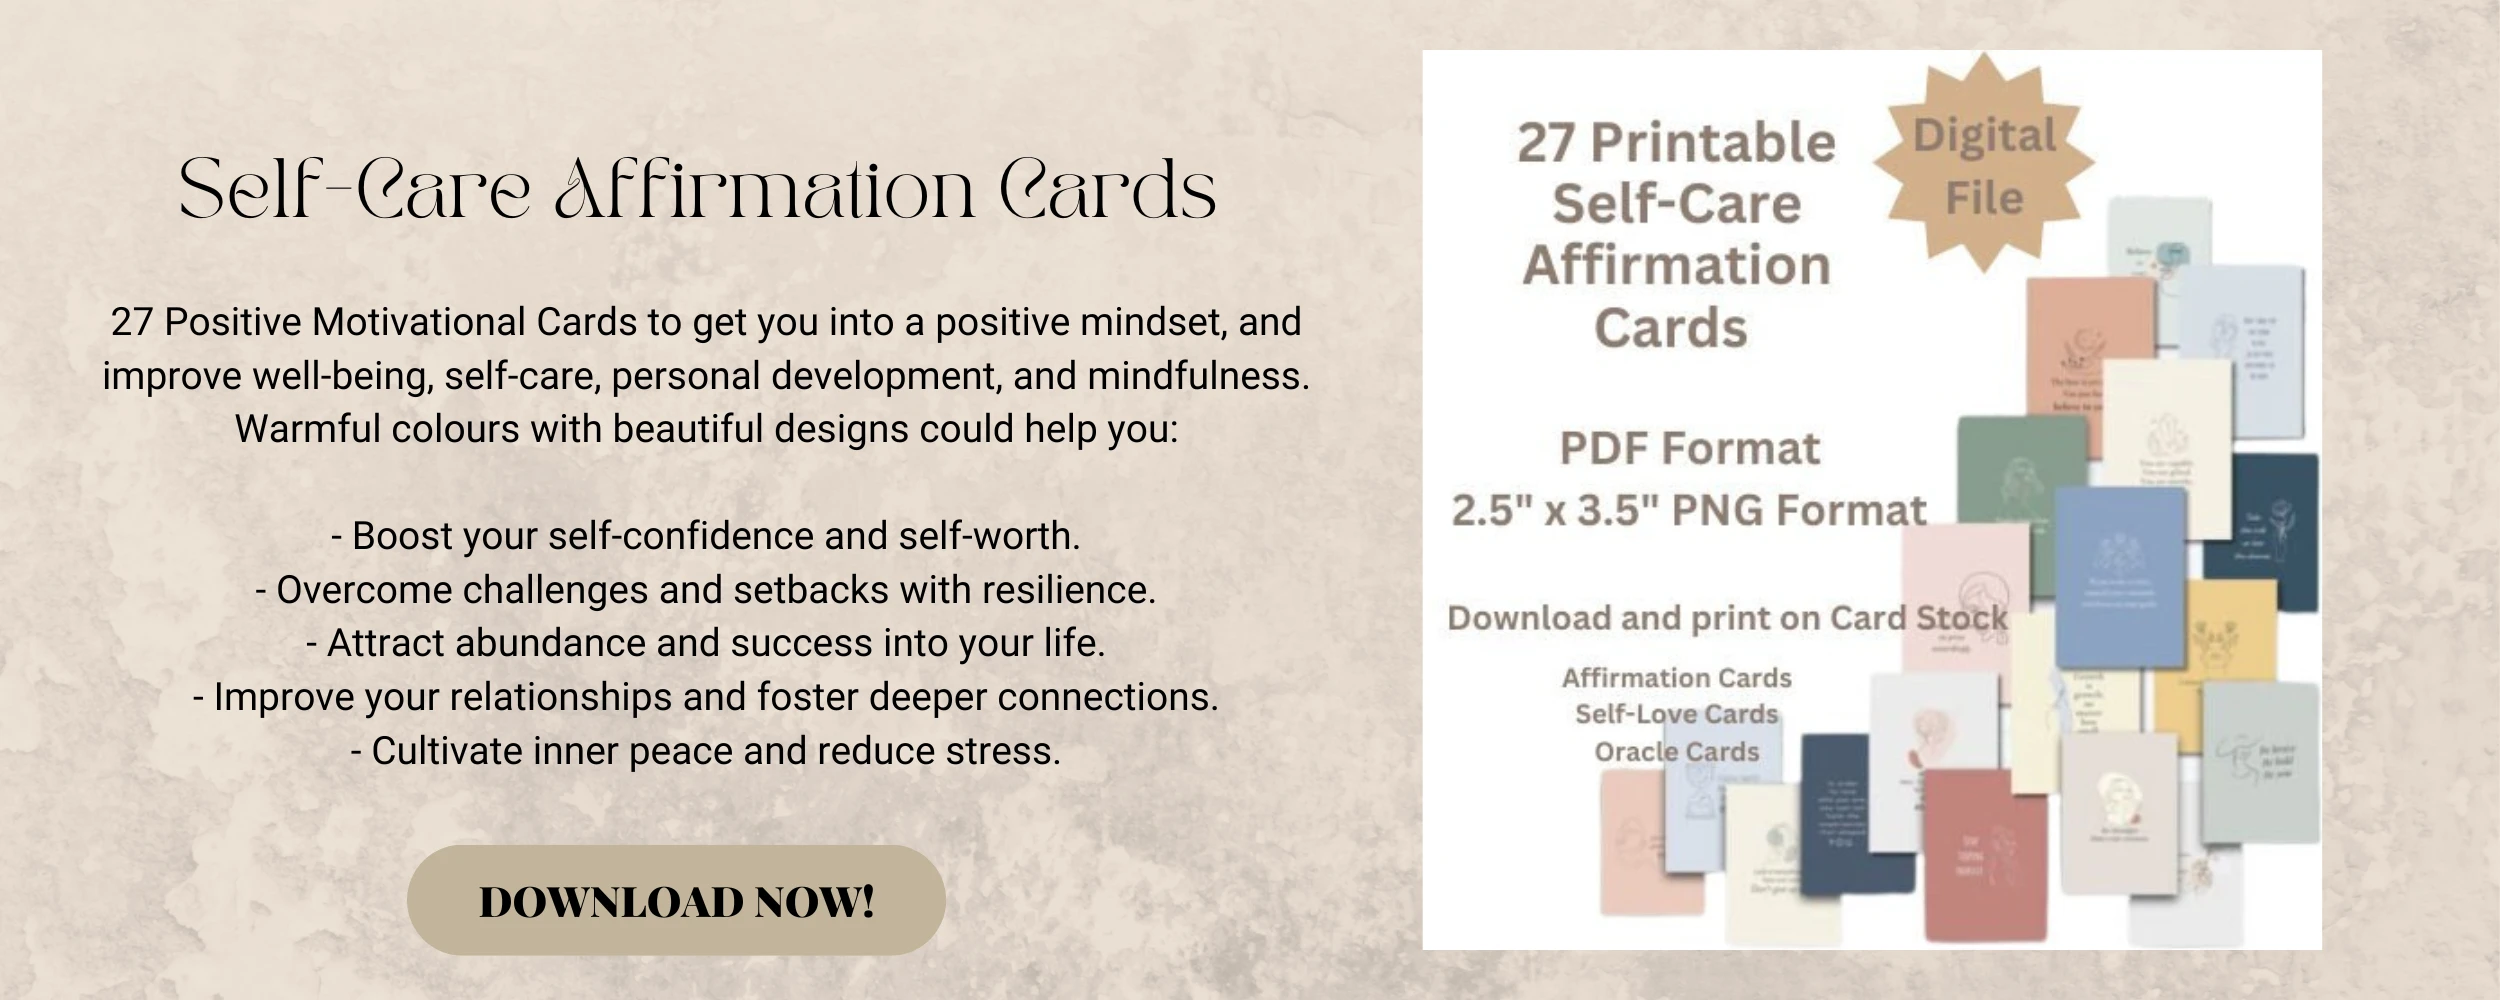 0025001000315-website-self-care-affirmation-cards-17067193164921.png